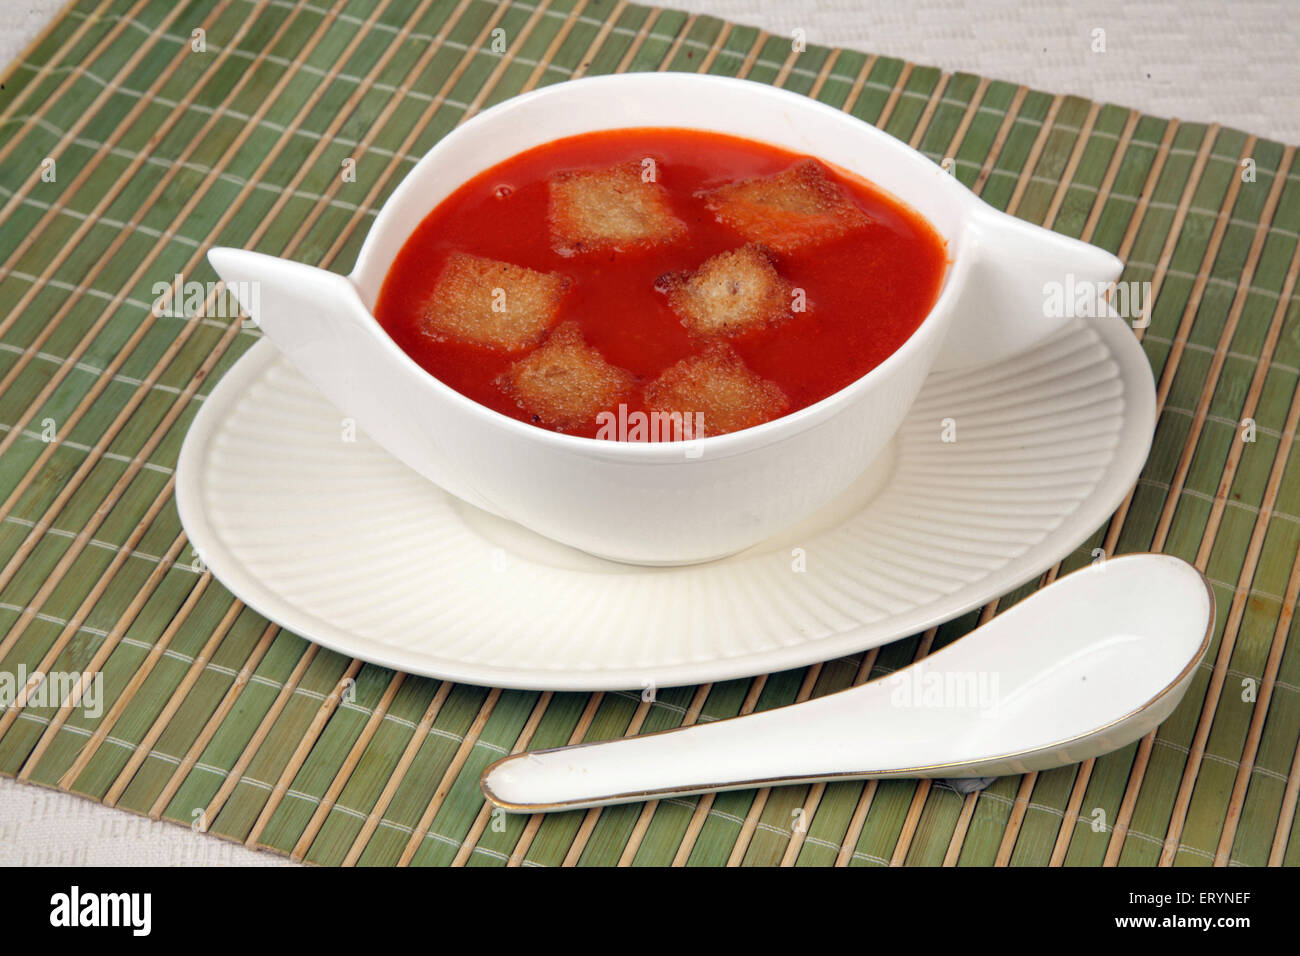 Les non végétariens soupe de tomate avec des petits morceaux de pain Asie Inde PR# 743AH Banque D'Images